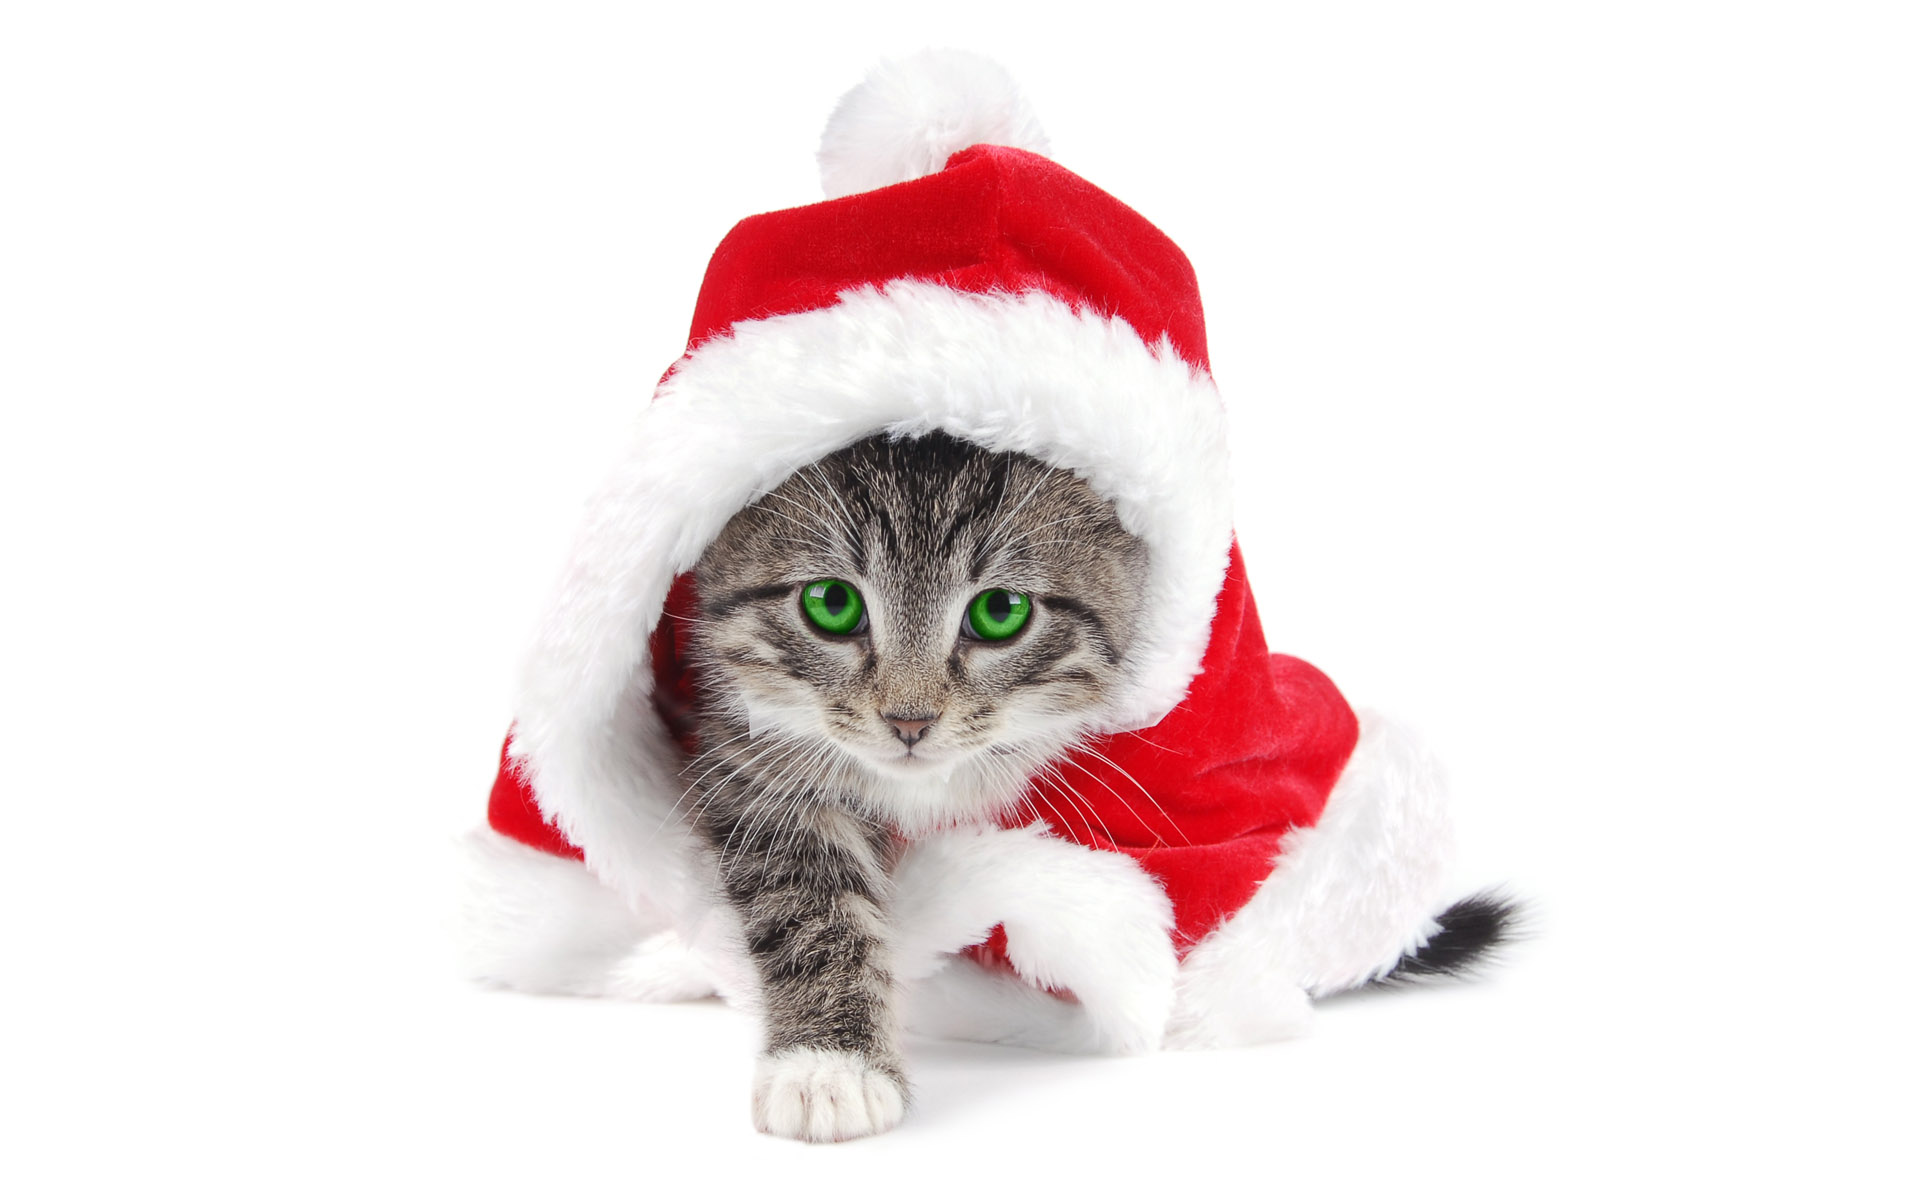 ws_Santa_is_a_cat_1920x1200